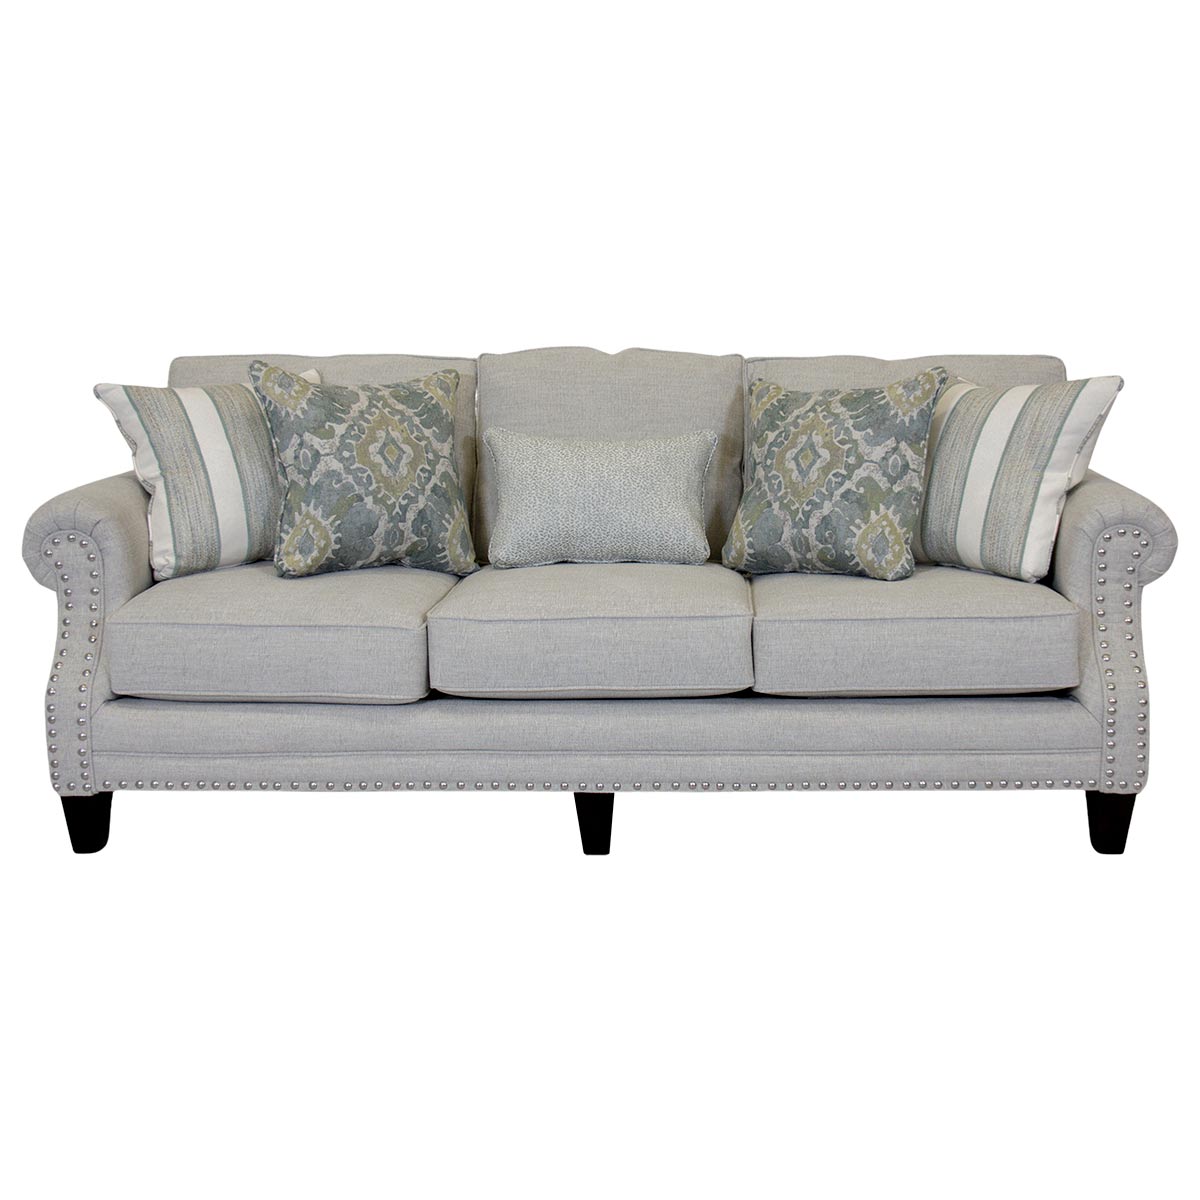 Fusion Furniture Lamont Aluminum Sofa